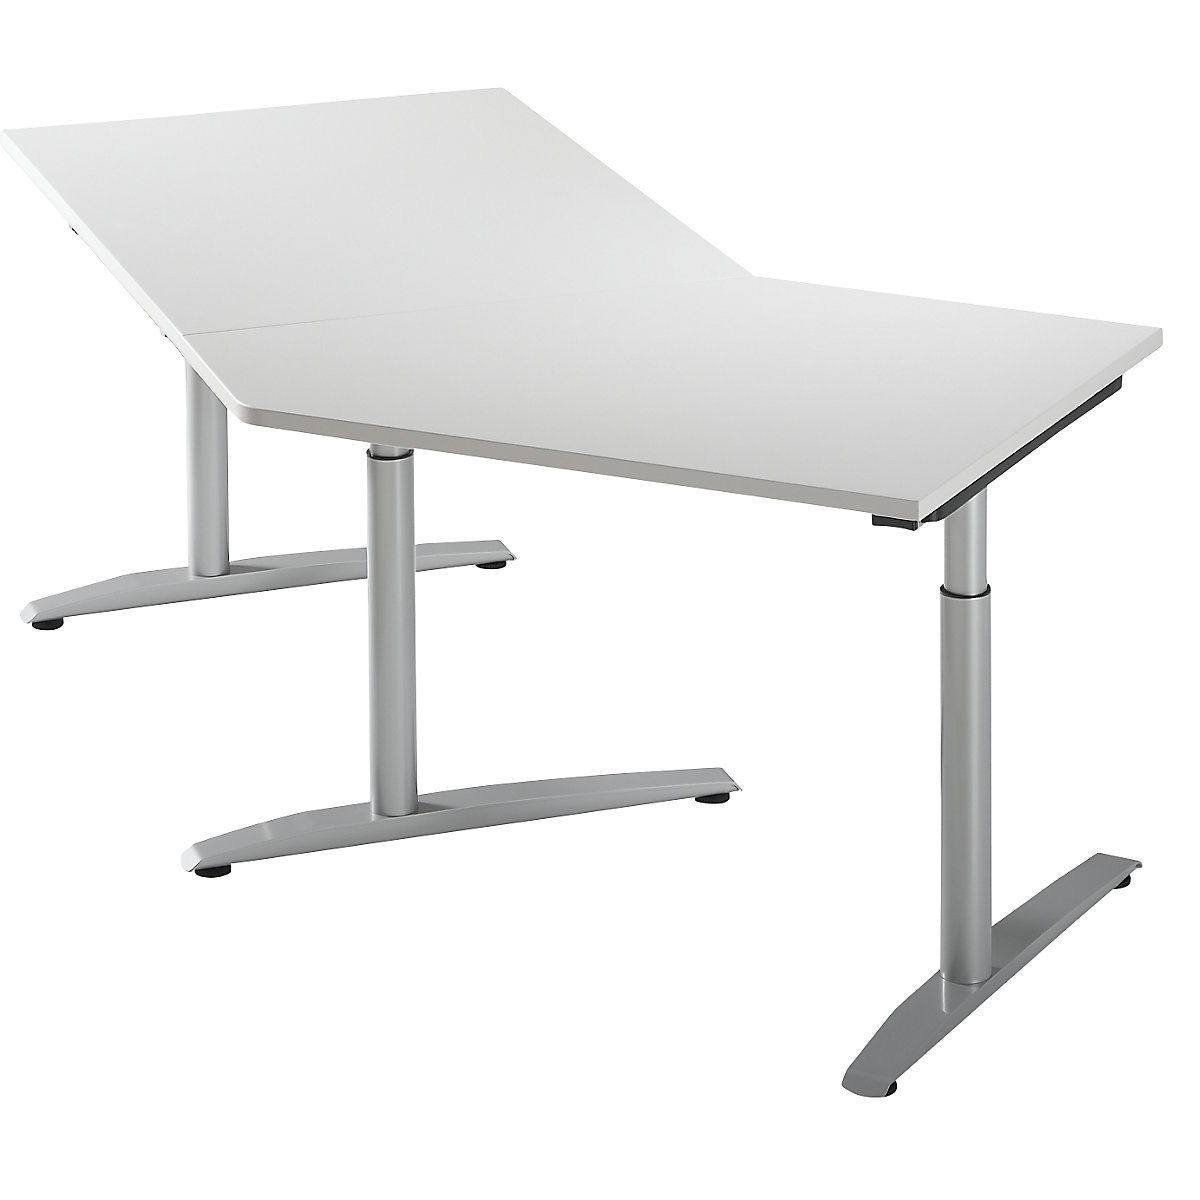 Přístavný stůl, výškově přestavitelný v rozsahu 650 - 850 mm HANNA